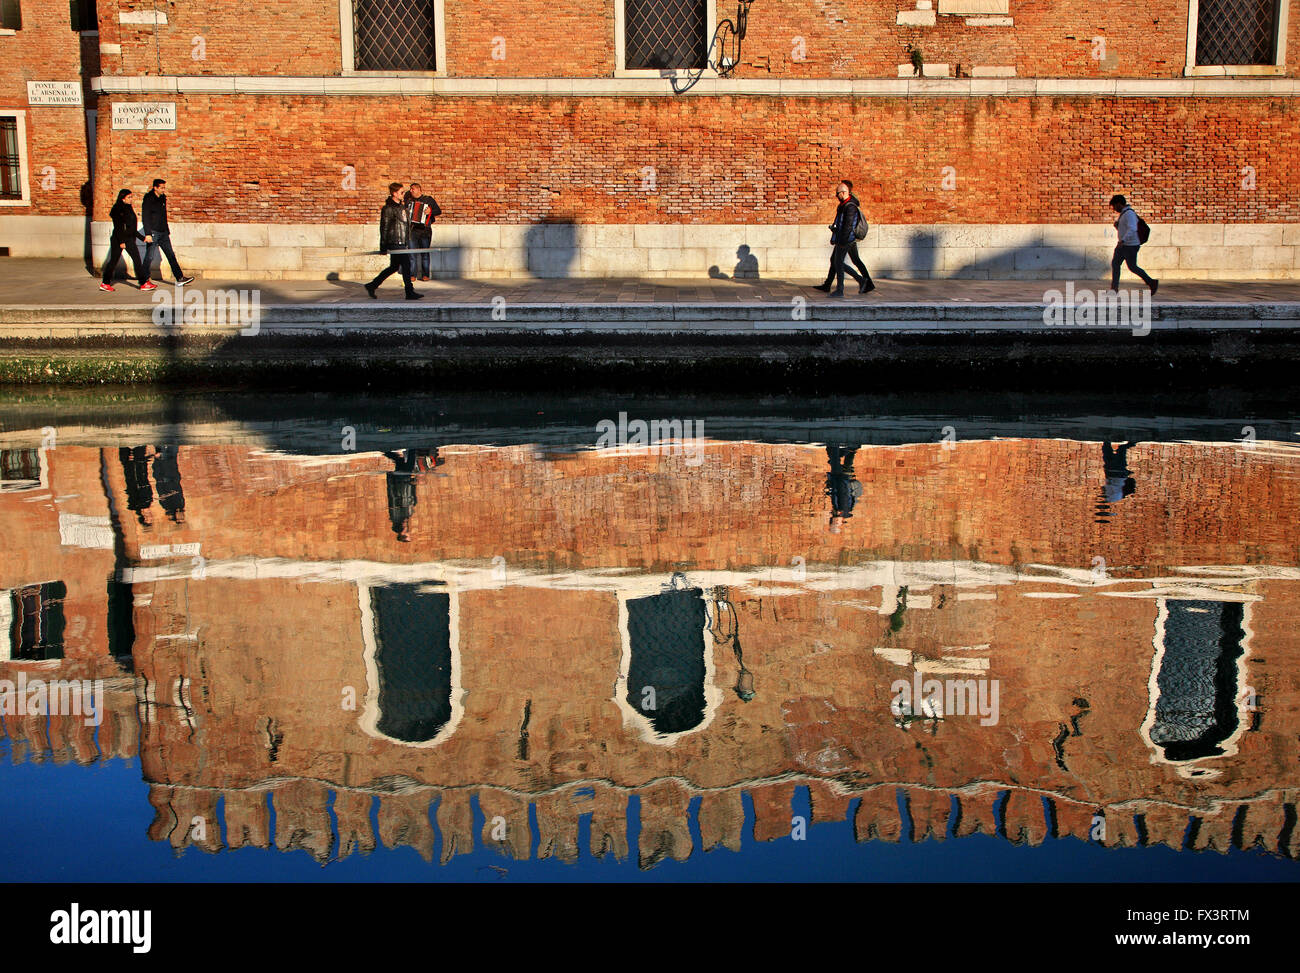 Accordion player outside the Arsenale (shipyards), Sestiere di Castello, Venezia (Venice), Italy. Stock Photo